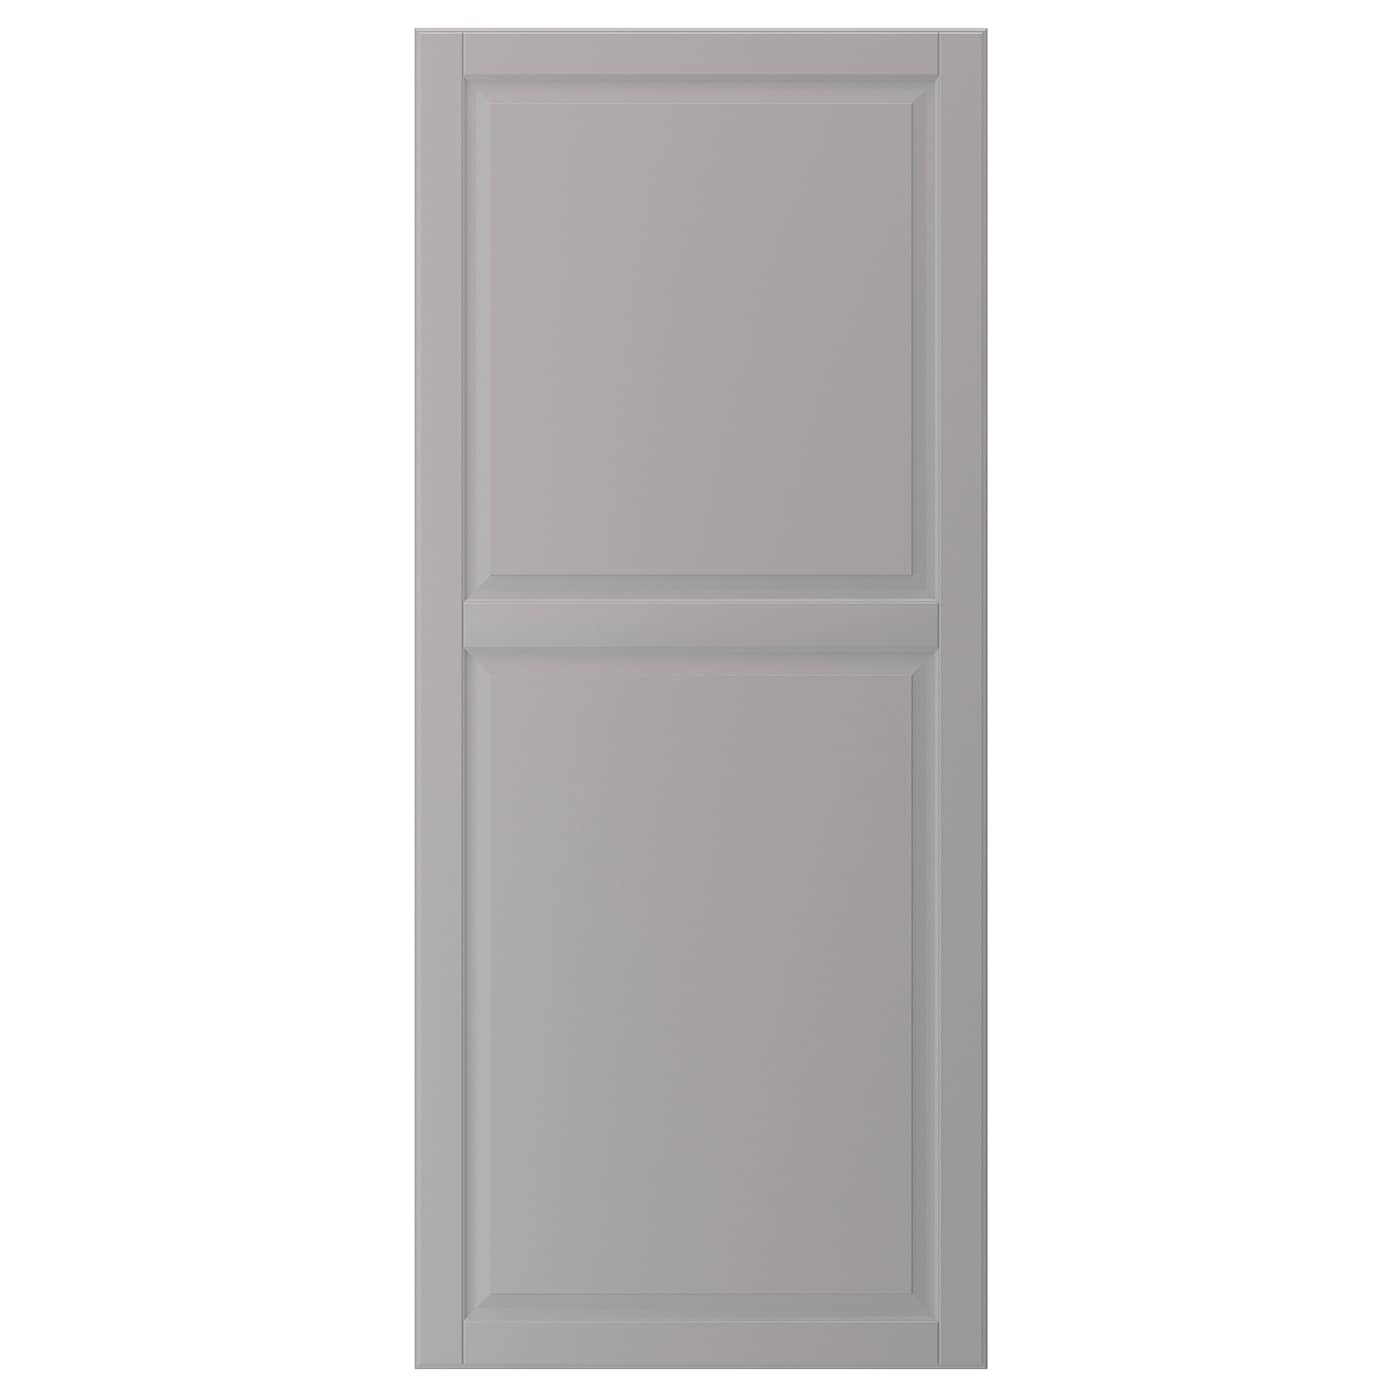 Дверца - IKEA BODBYN, 140х60 см, серый, БУДБИН ИКЕА